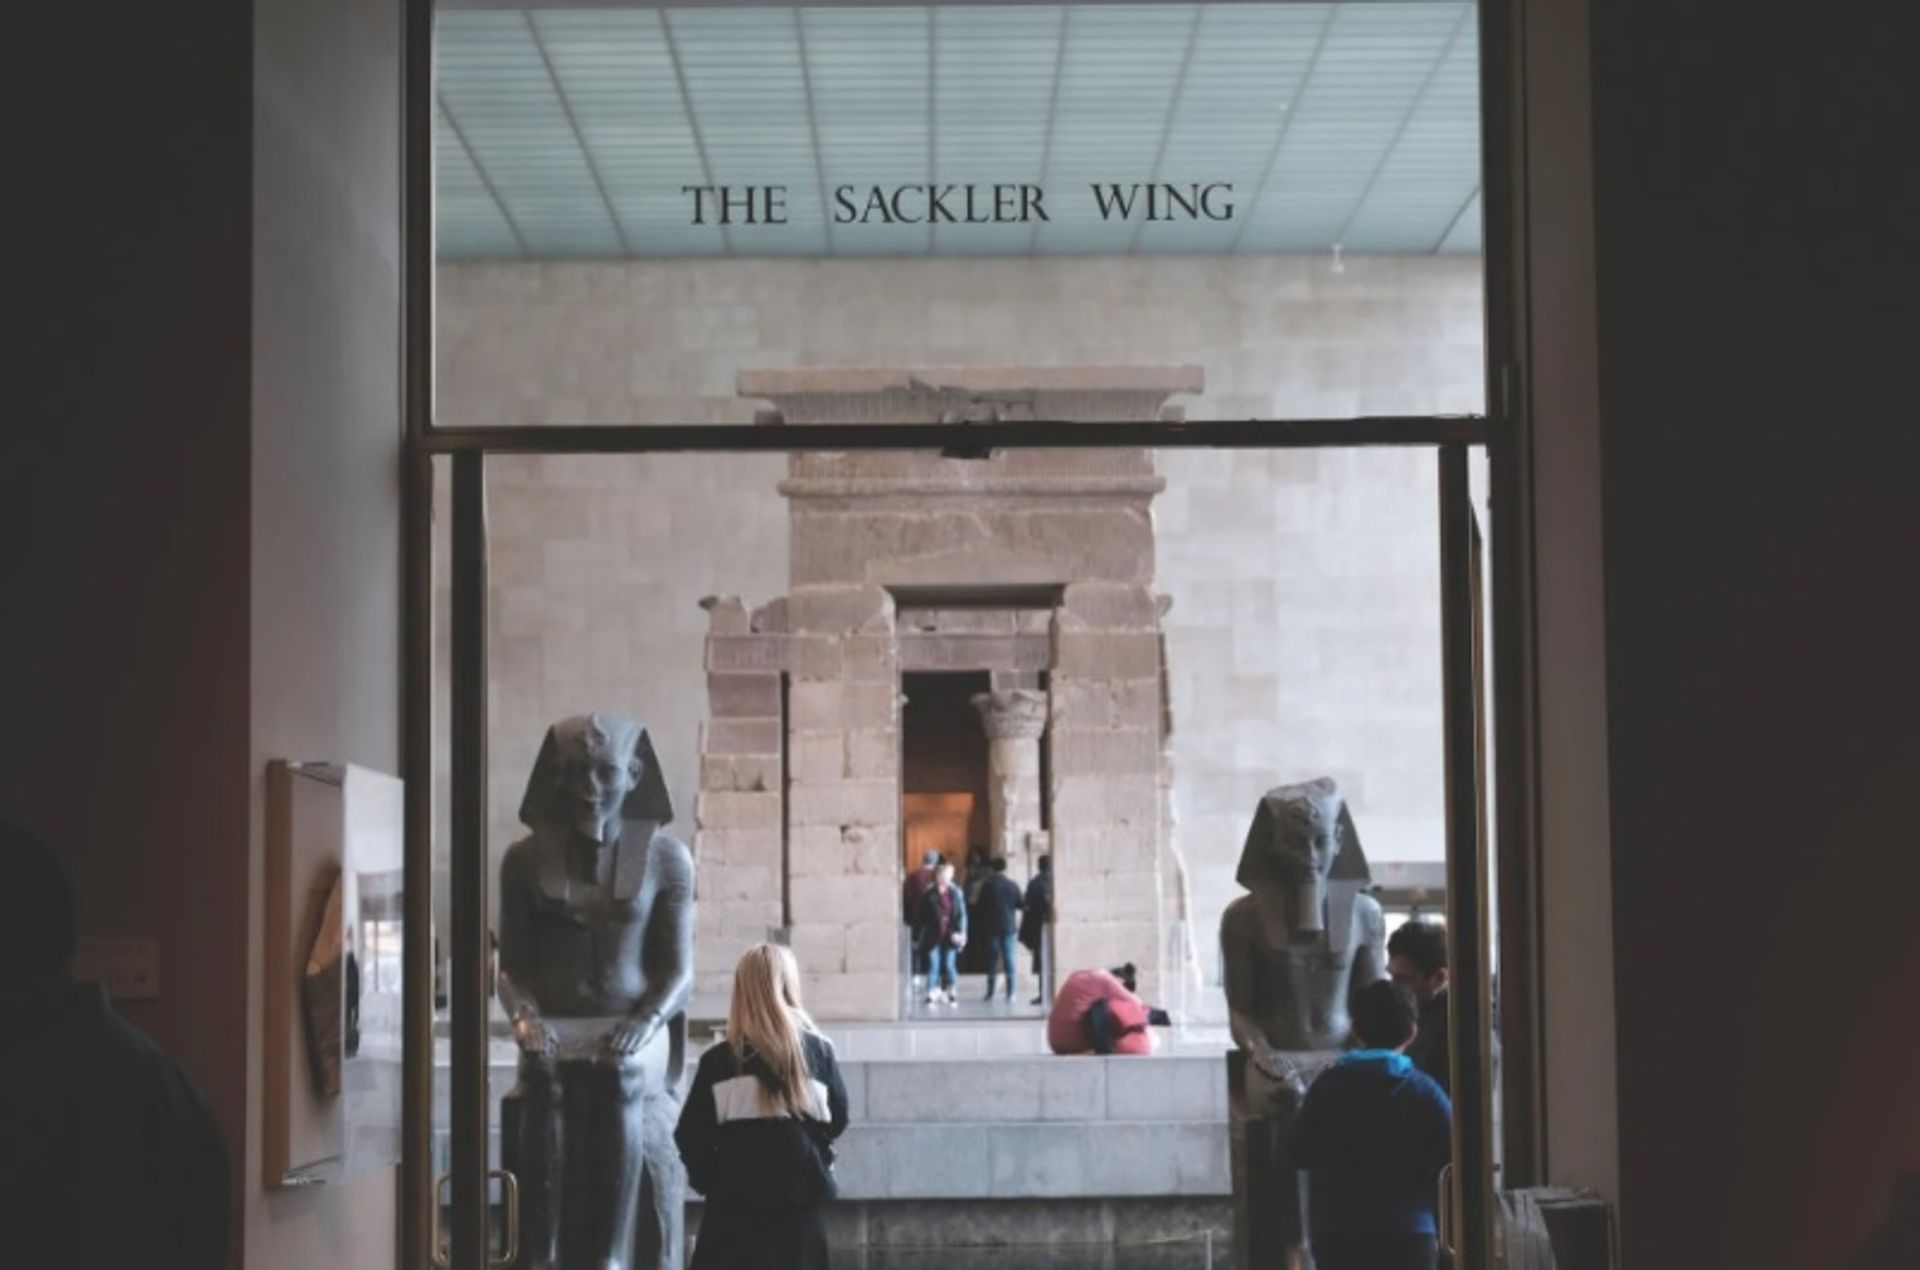 אגף סאקלר לשעבר במוזיאון המטרופוליטן לאמנות, ניו יורק, בשנת 2018. ה-Met, שקיבל תרומות ממשפחת סאקלר במשך עשרות שנים, הסיר את השם מבנייניו בסוף השנה שעברה, בעקבות קמפיין בראשות האמן נאן גולדין.

ספנסר פלאט / Getty Images.